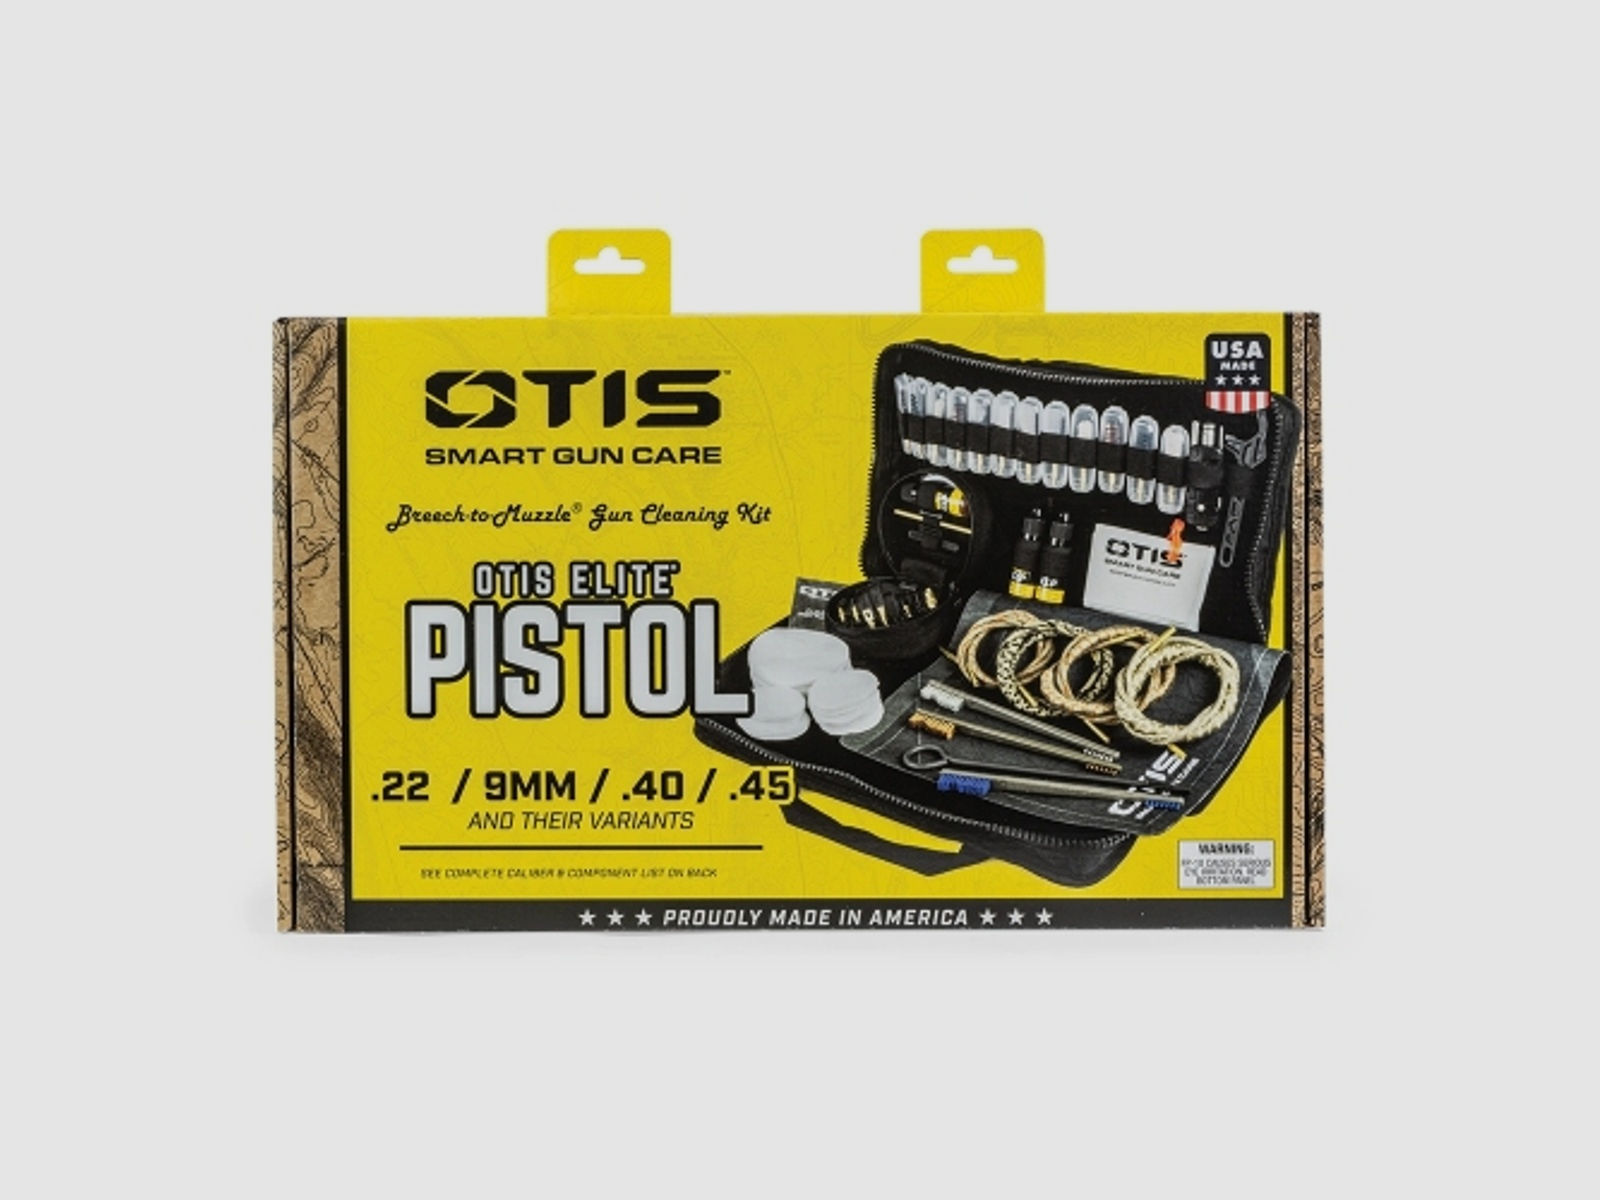 Otis Elite Pistol - Universal Reinigungskit